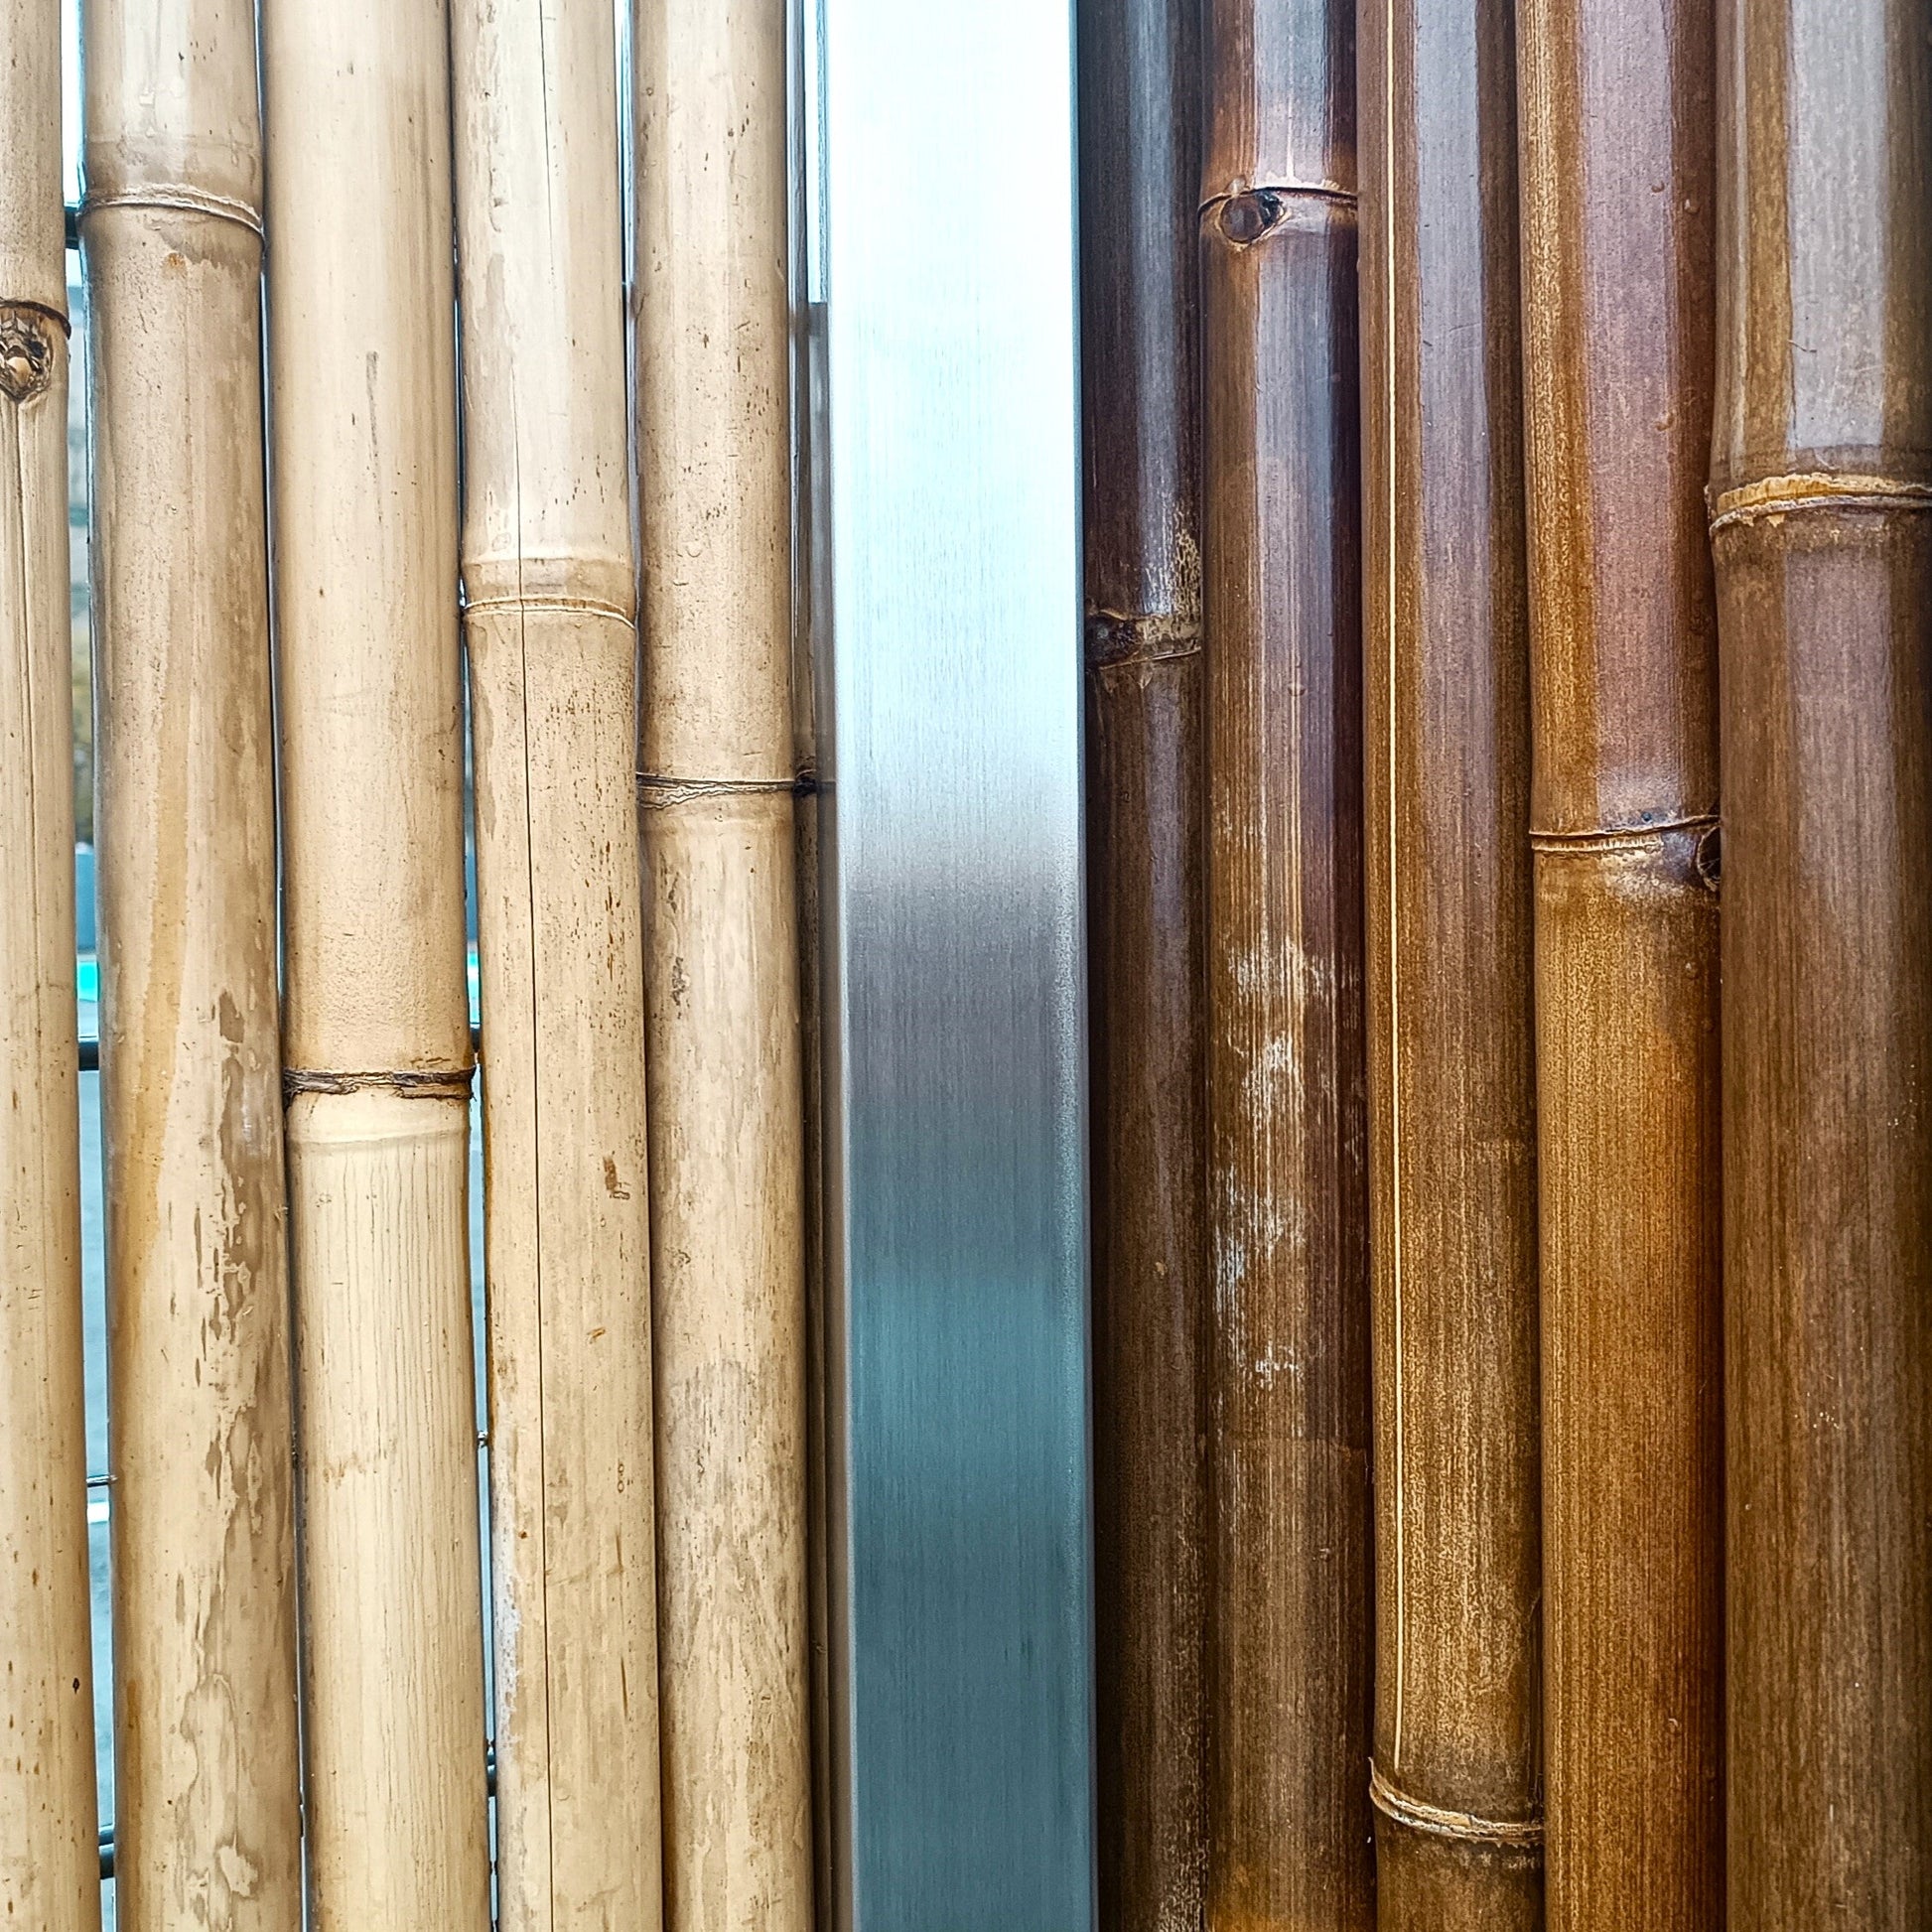 Detailfoto - Edlestahl in Kombination mit hellem und dunklem Bambus